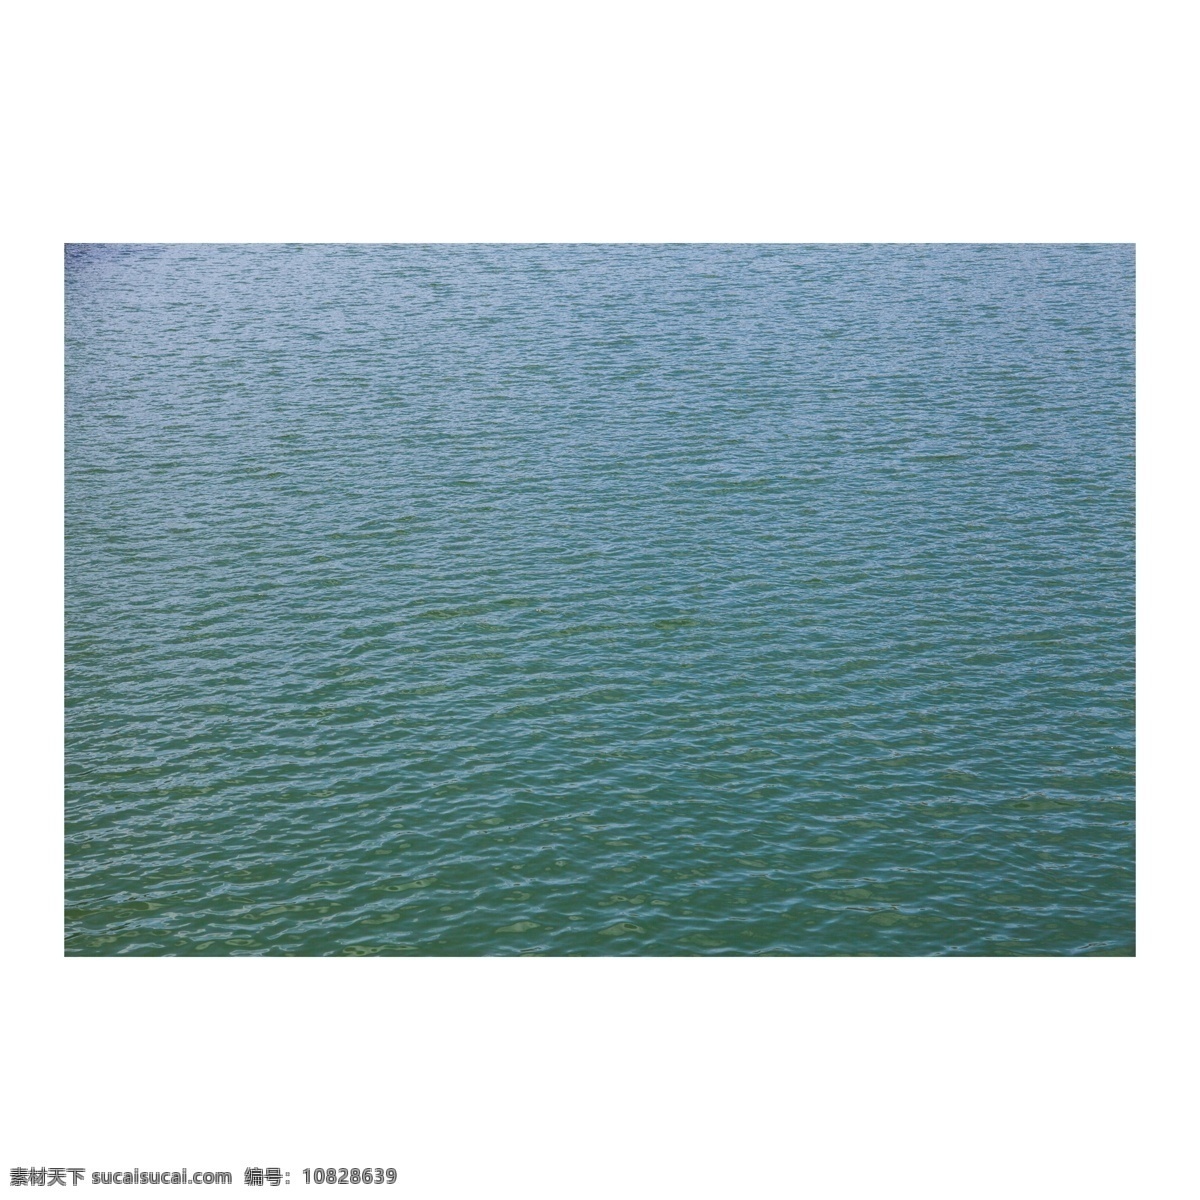 波光粼粼 绿色 水面 绿色水面 微波 荡漾 湖面 湖水 放松 休闲 景观 景点 自然 旅游